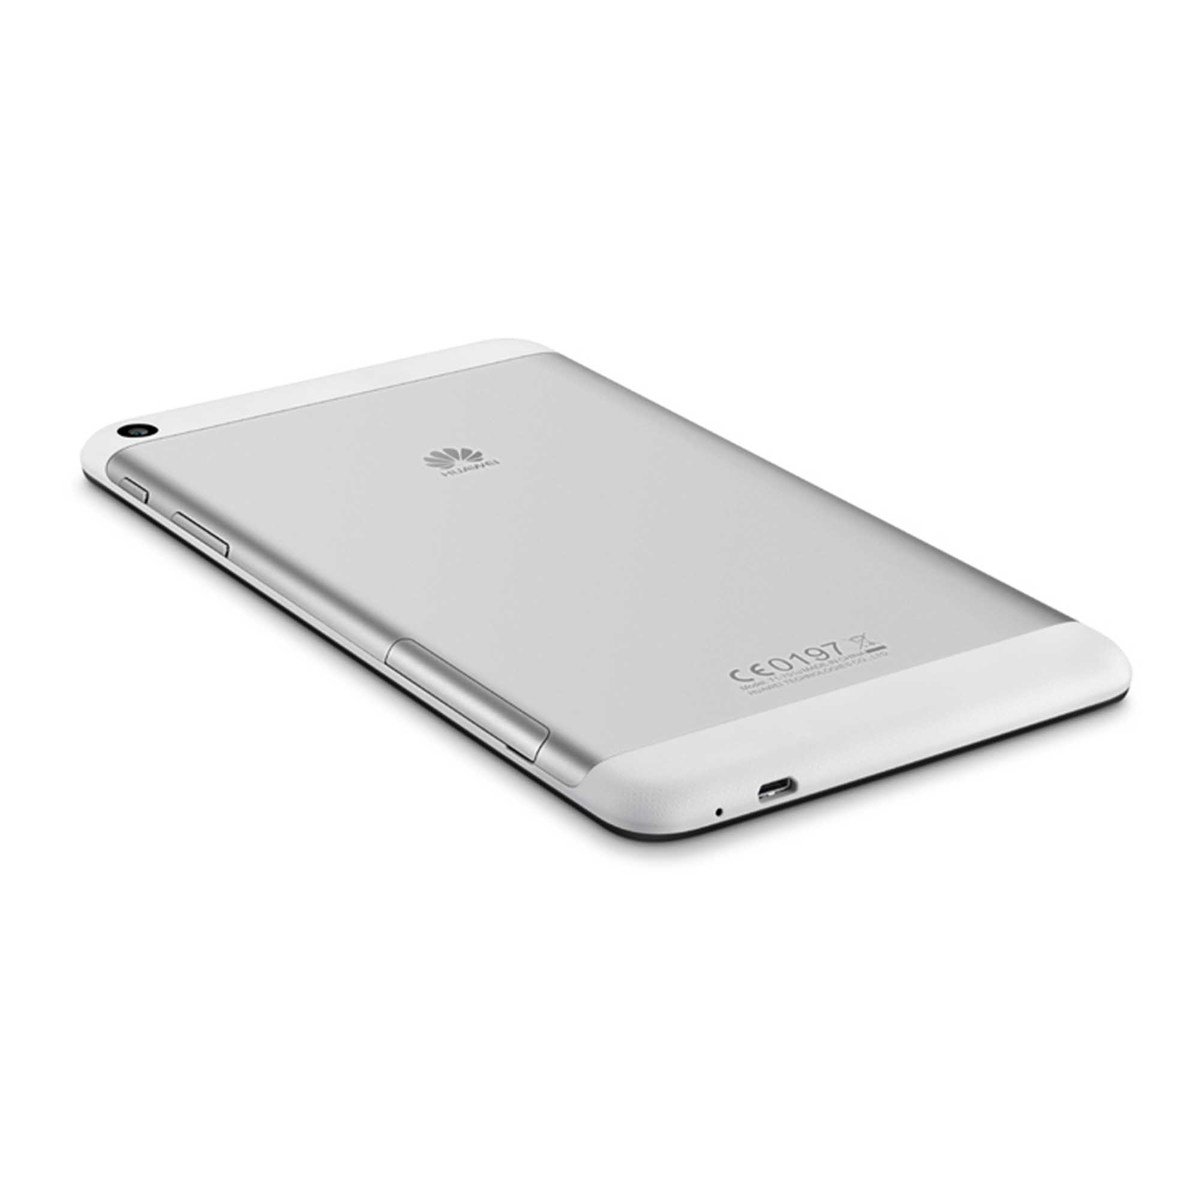 Huawei MediaPad T1-701U 7inch 16GB 3G Wi-Fi Black/Silver